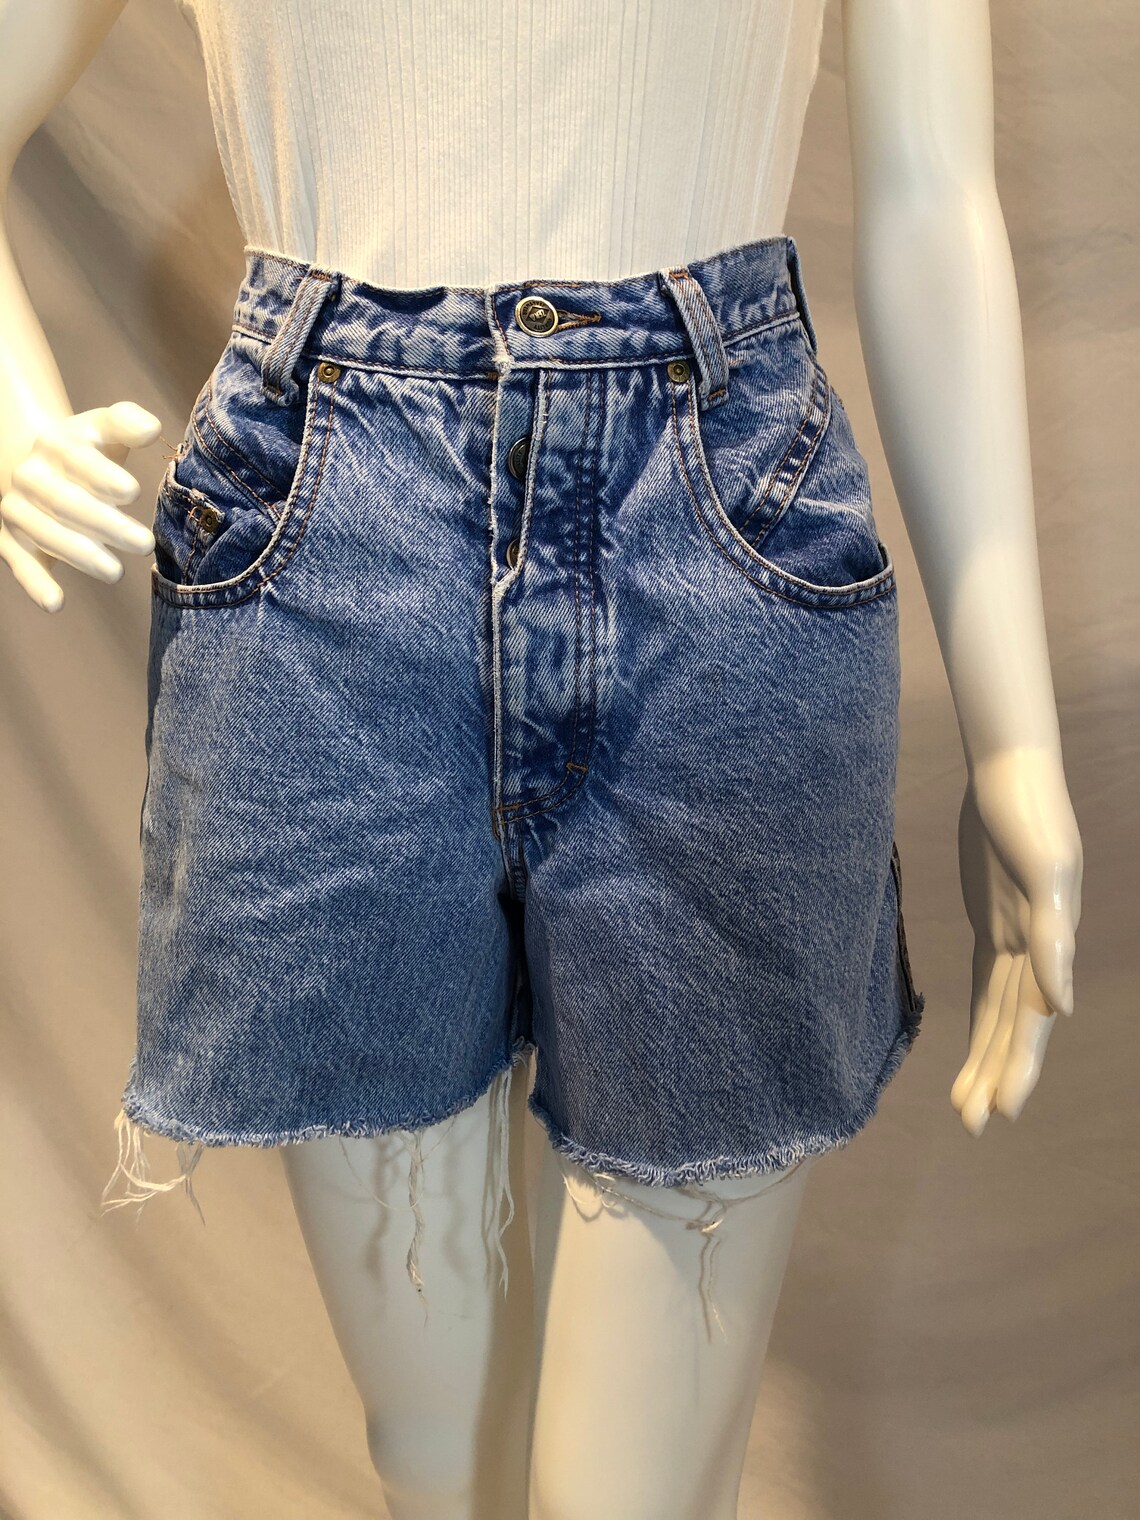 Vintage 90s Zena Jeans Hight Waisted Shorts Medium Light Wash | Etsy